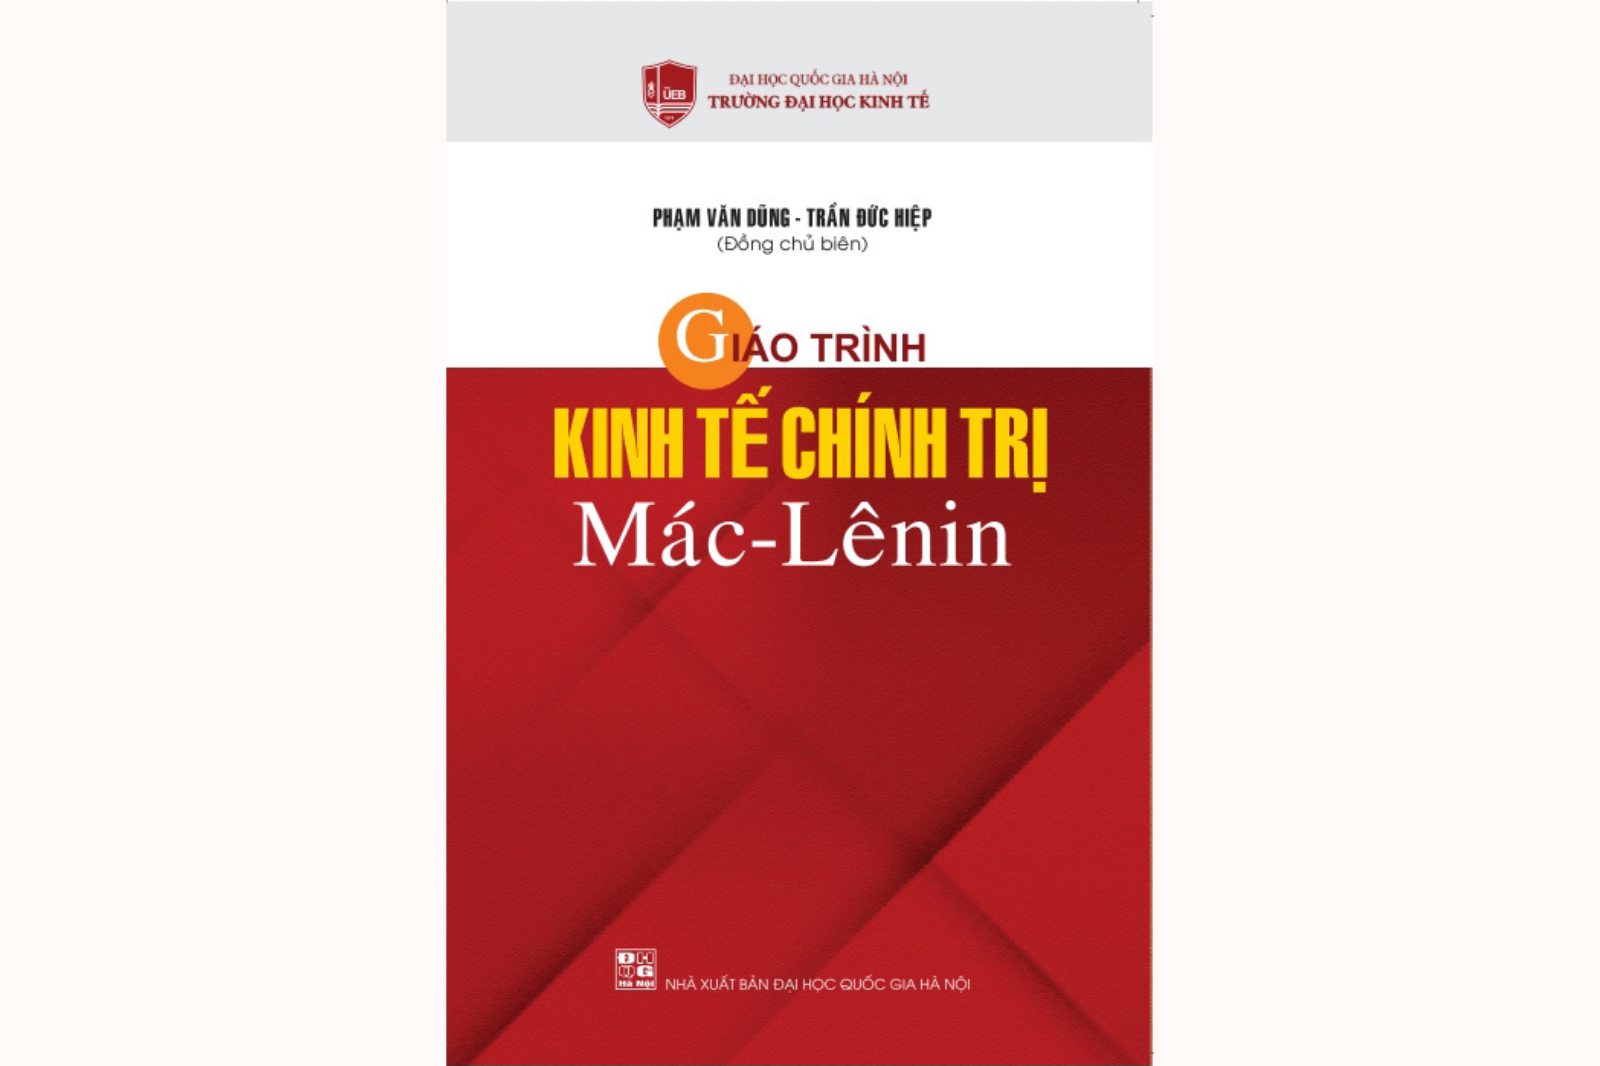  Giáo trình kinh tế chính trị Mác - Lênin